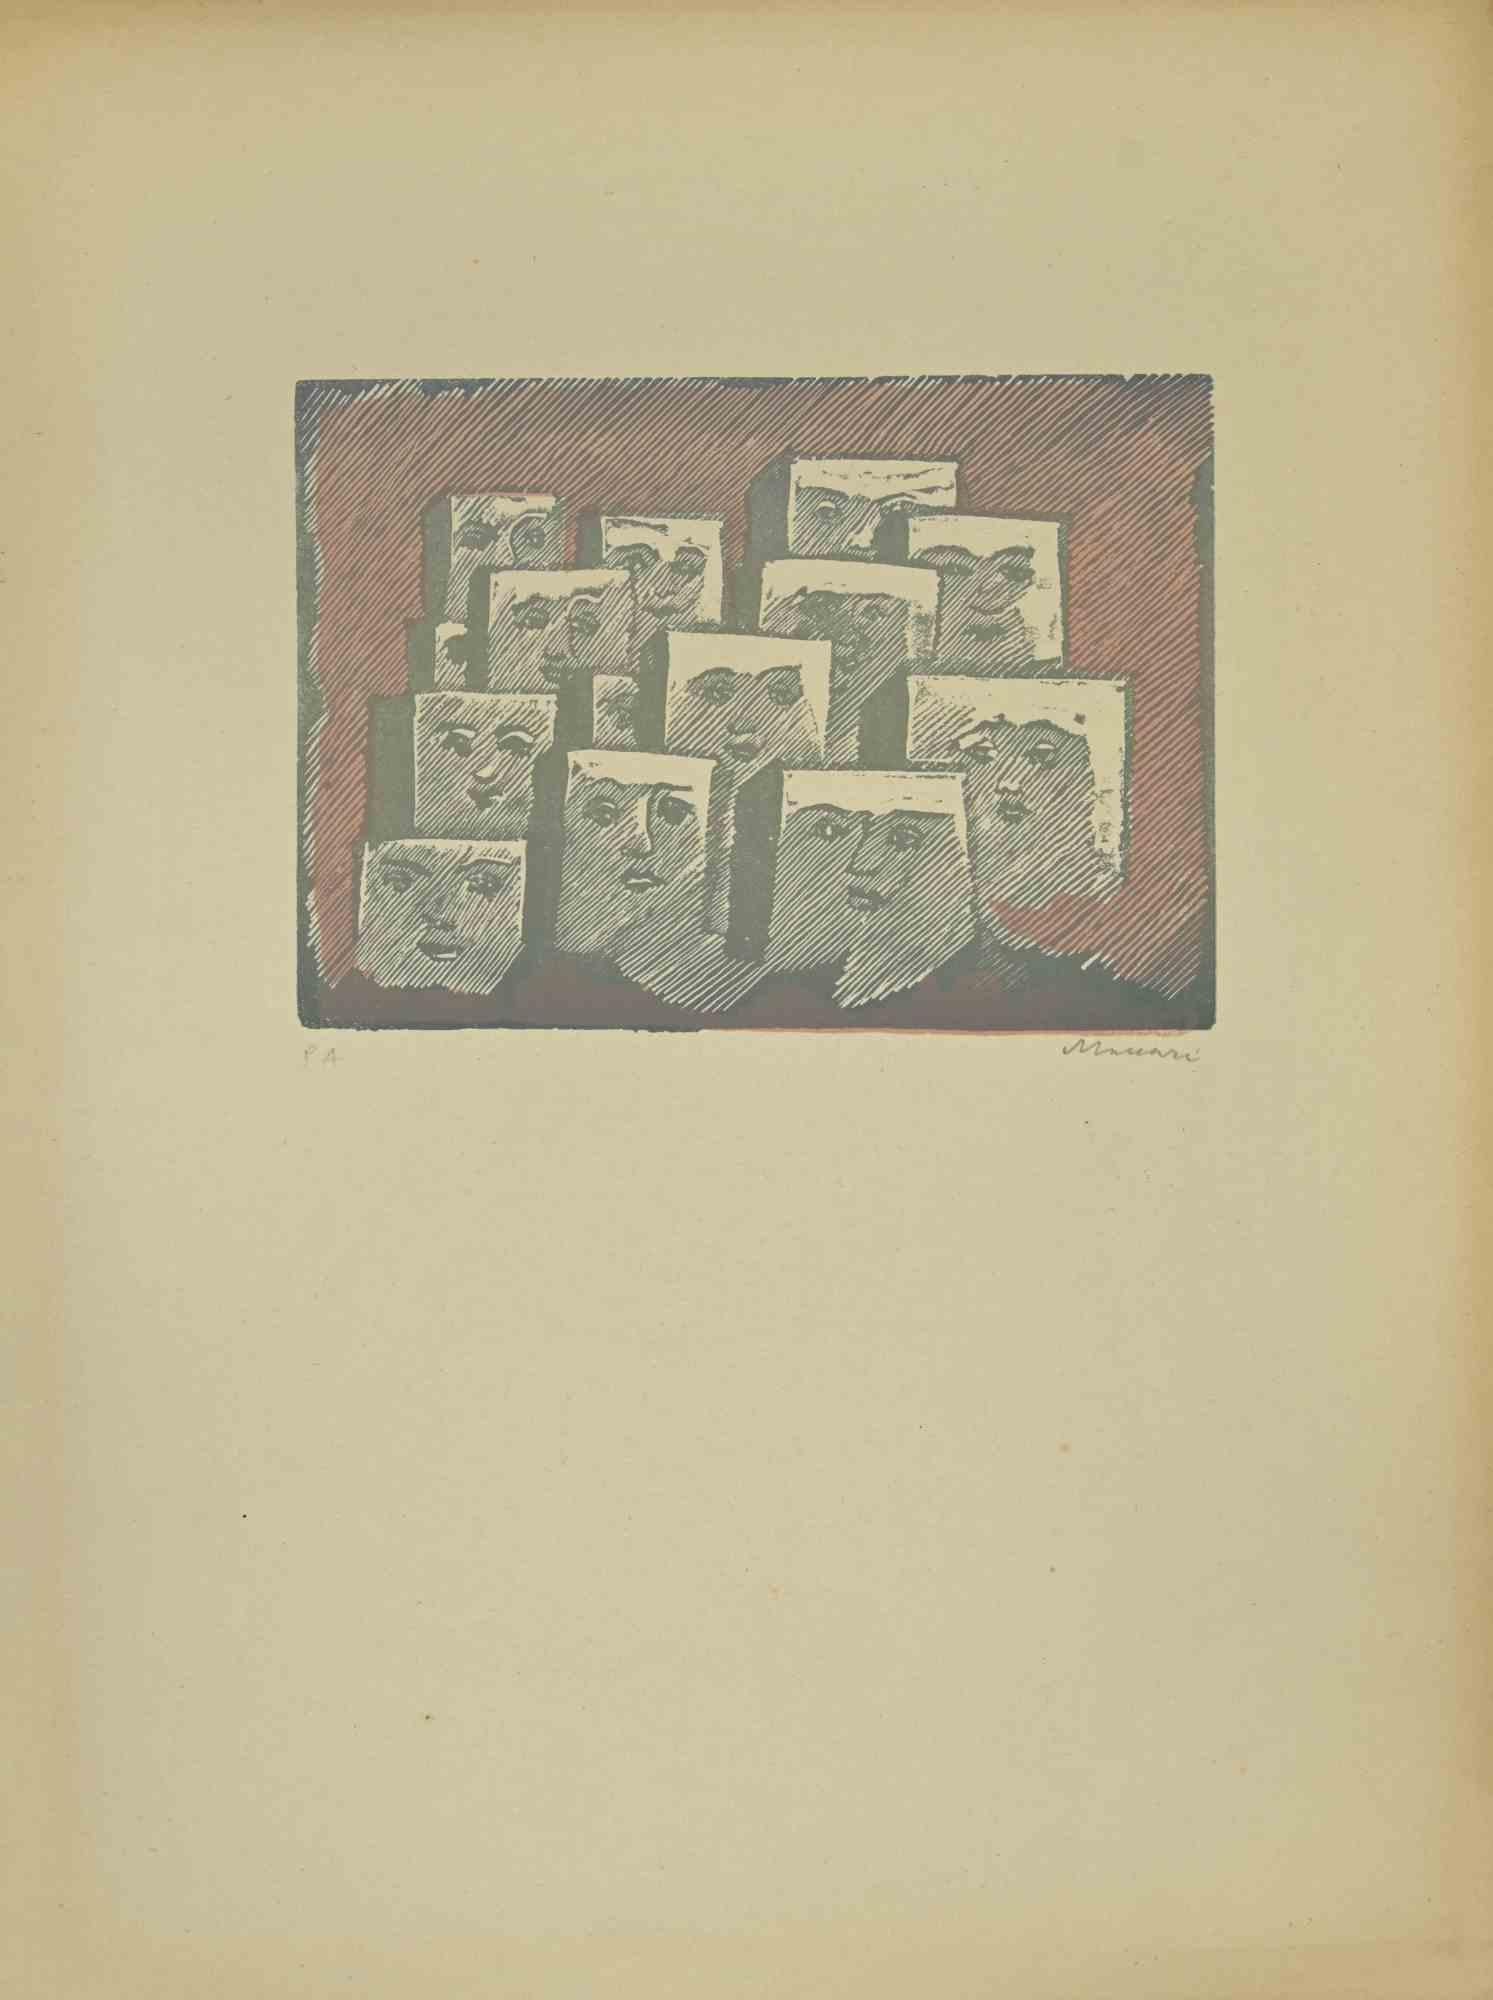 Faces ist ein Linolschnitt  von Mino Maccari in den 1940er Jahren realisiert.

50 x 30 cm.

Unten rechts handsigniert. Auflage von 12 Exemplaren.

Referenz; Kat. Meloni , pag 367, n.1741.

Gute Bedingungen.

 

Mino Maccari (Siena, 1924-Rom, 16.